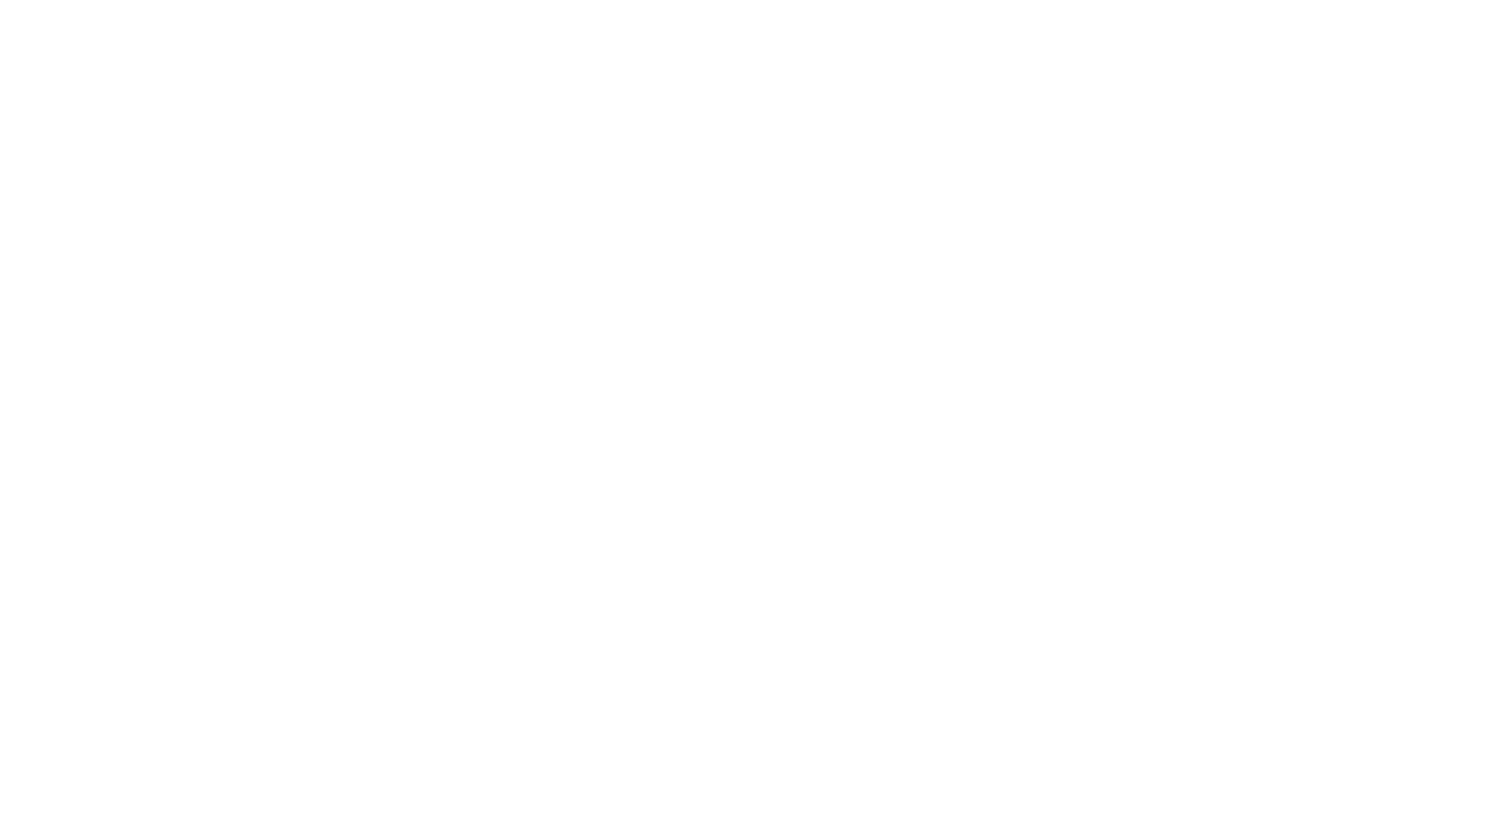 MAISON HAVEN